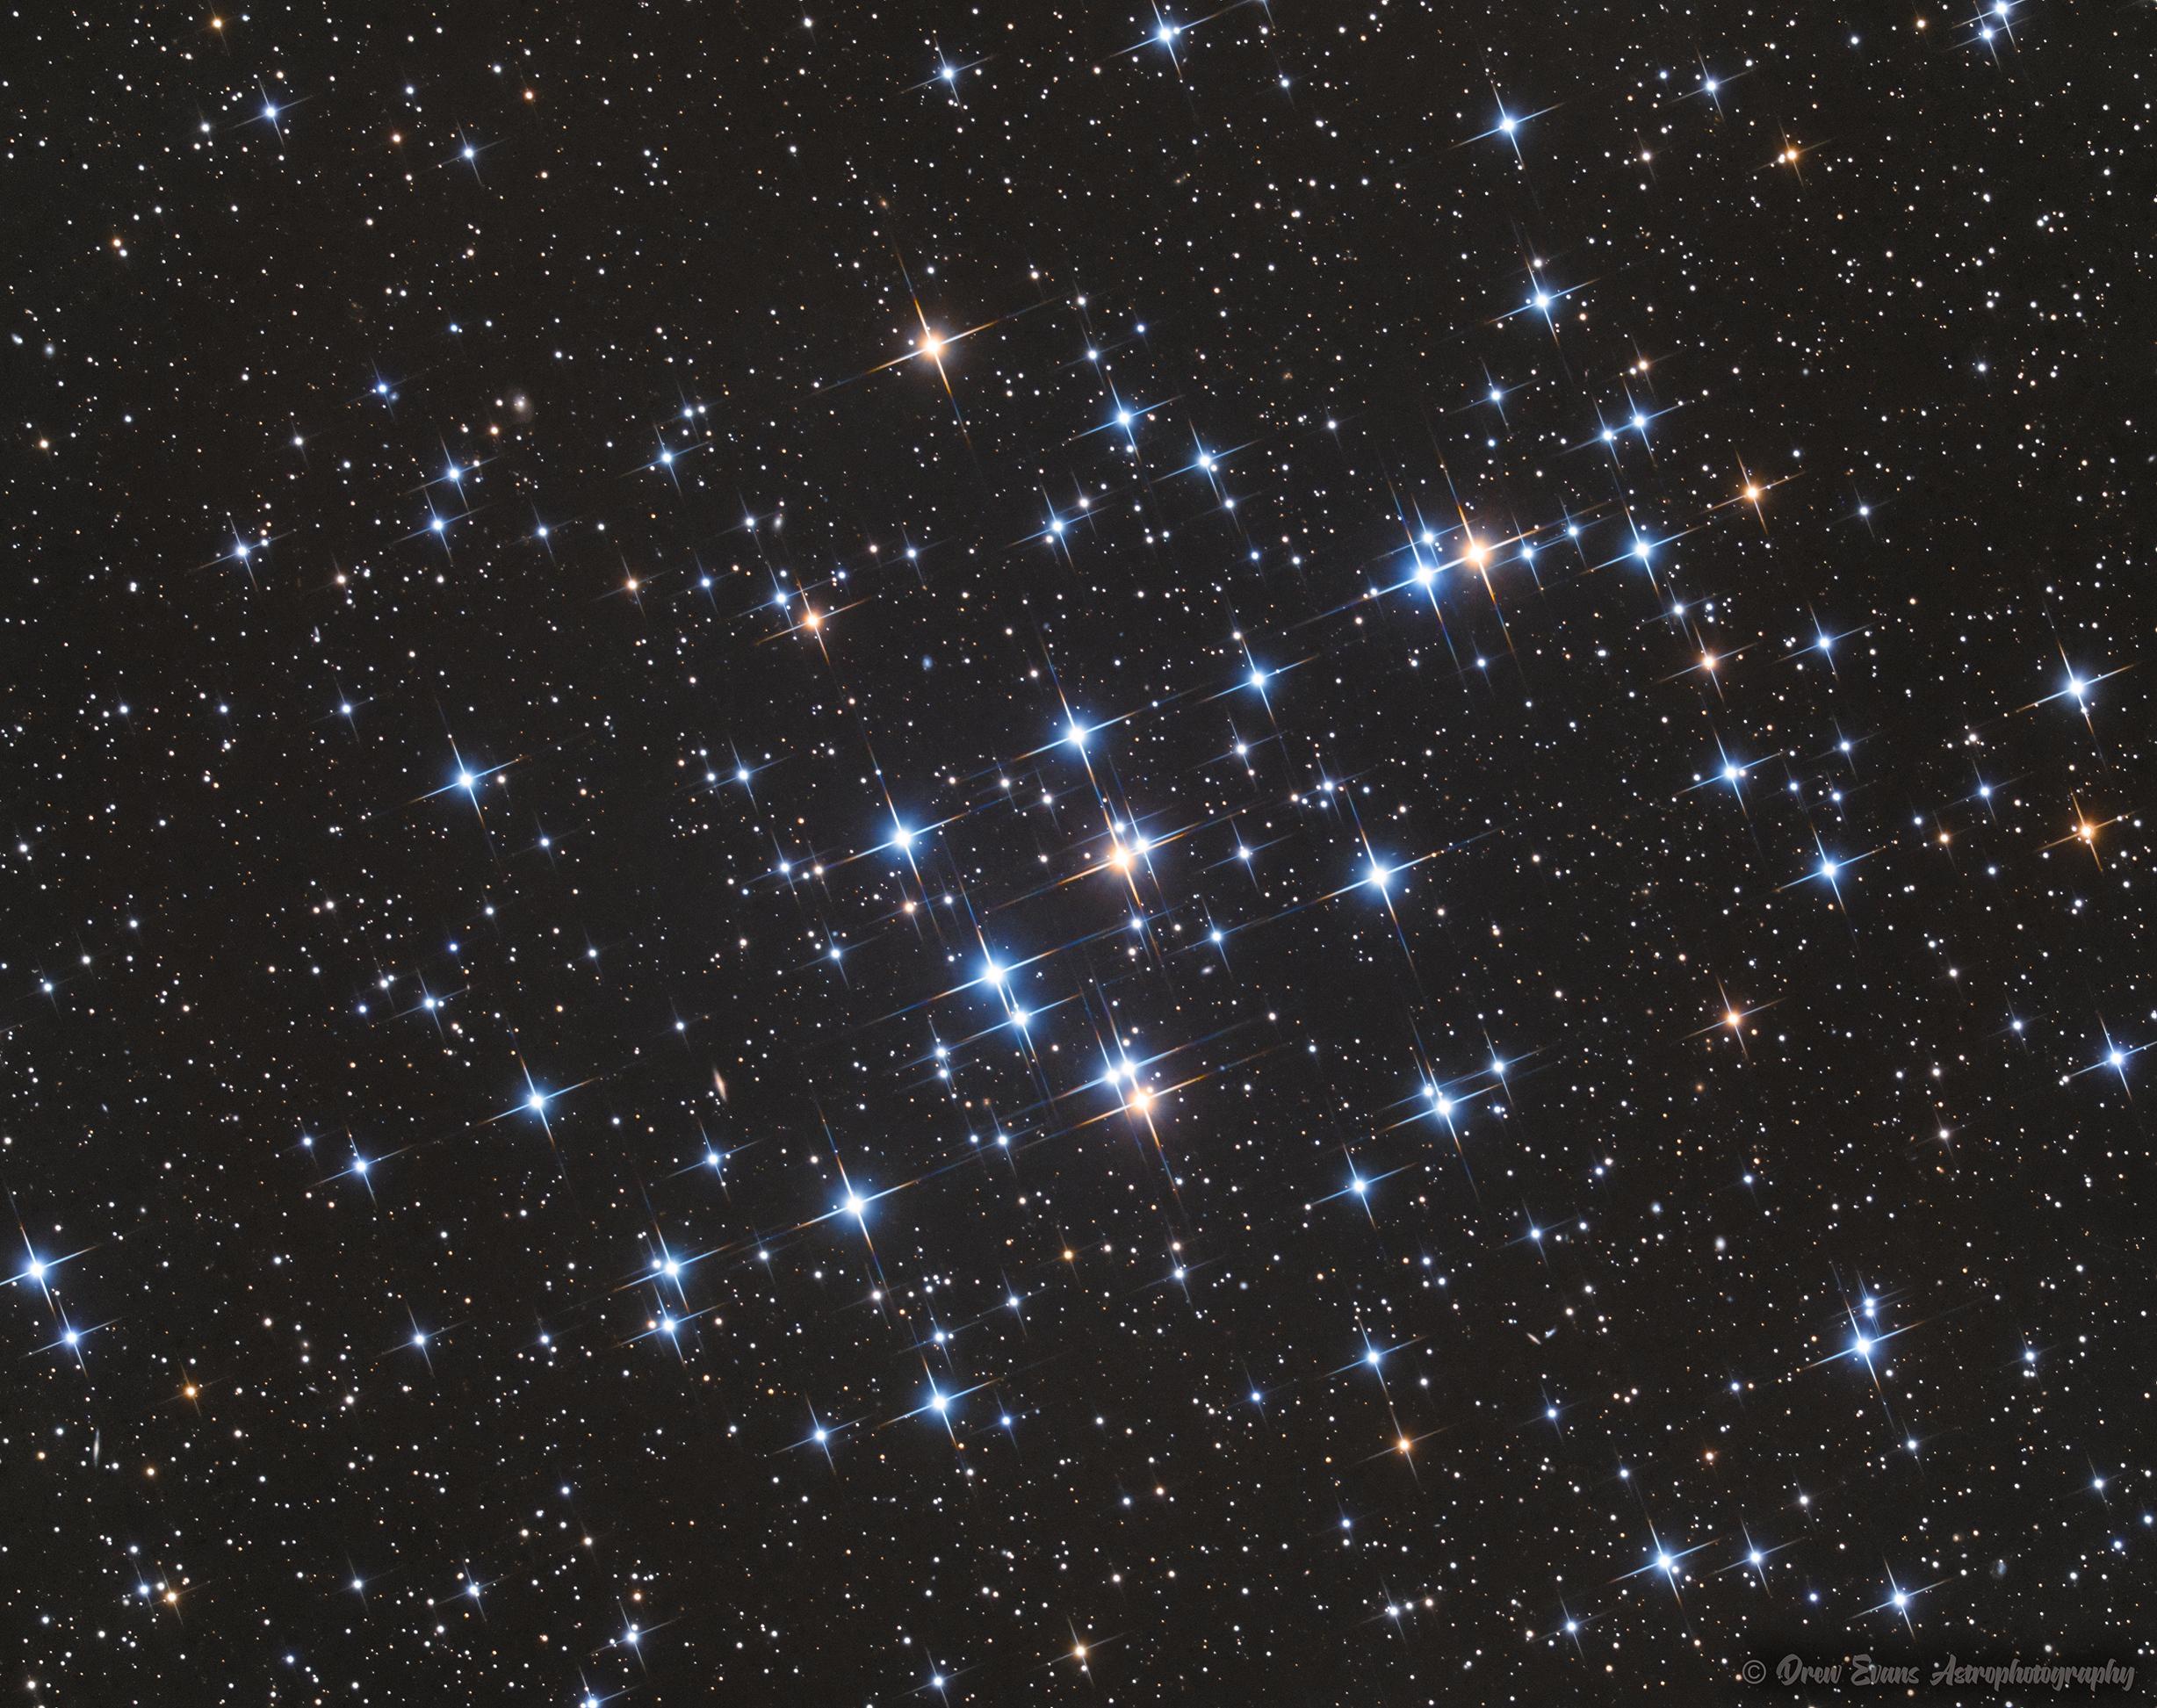 رقعة من السماء تظهر فيها نجوم مدبّبة متناثرة مزرقّة ومحمرّة وأخرى عادية أصغر وأقل سطوعاً